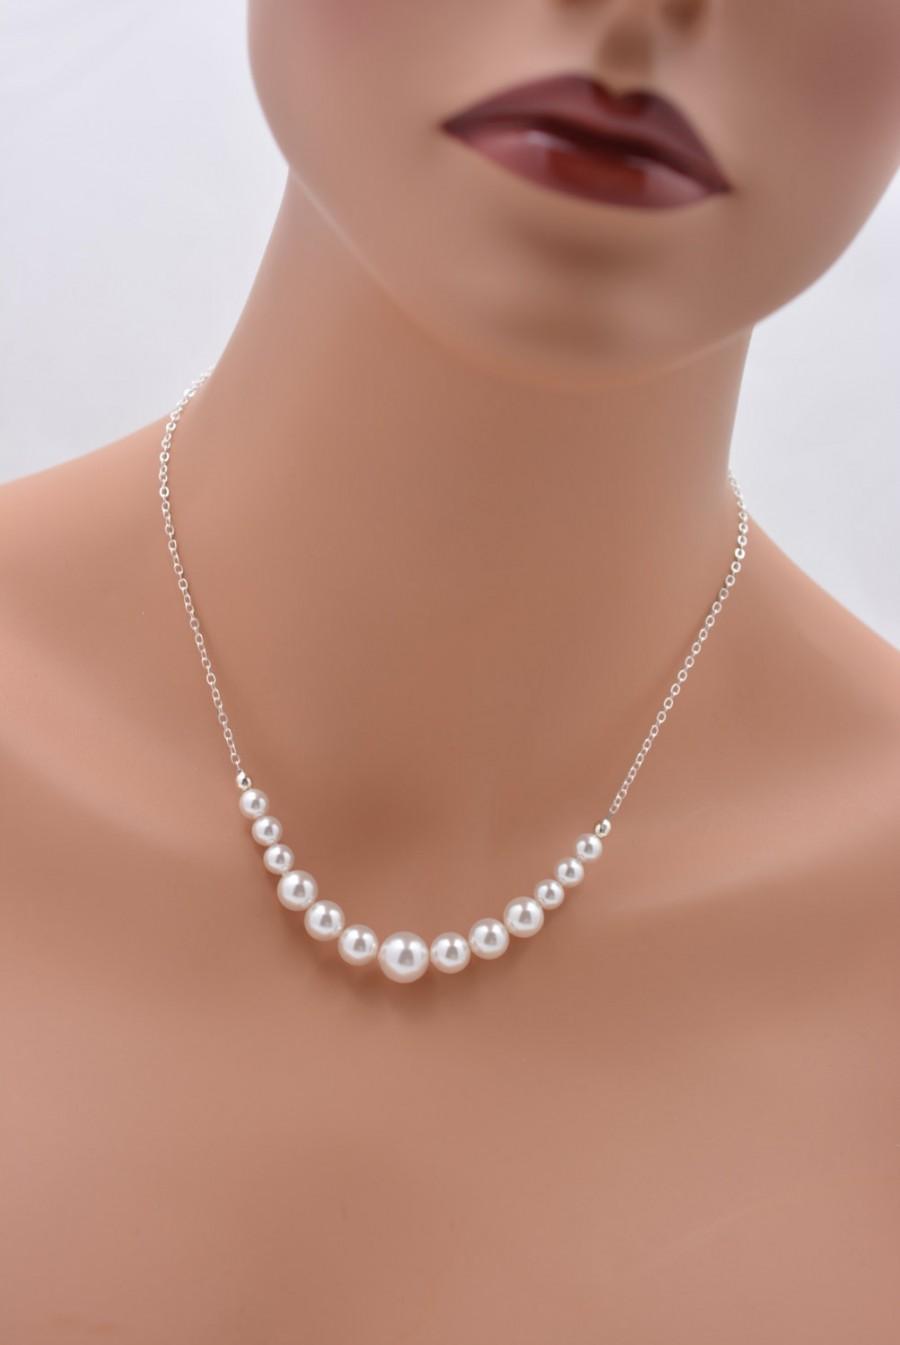 Mariage - Set of 3 Bridesmaid Necklaces, Sterling Silver Necklaces, 3 Swarovski Pearl Necklaces, Graduated Pearl Necklaces, Backdrop Necklaces 0237